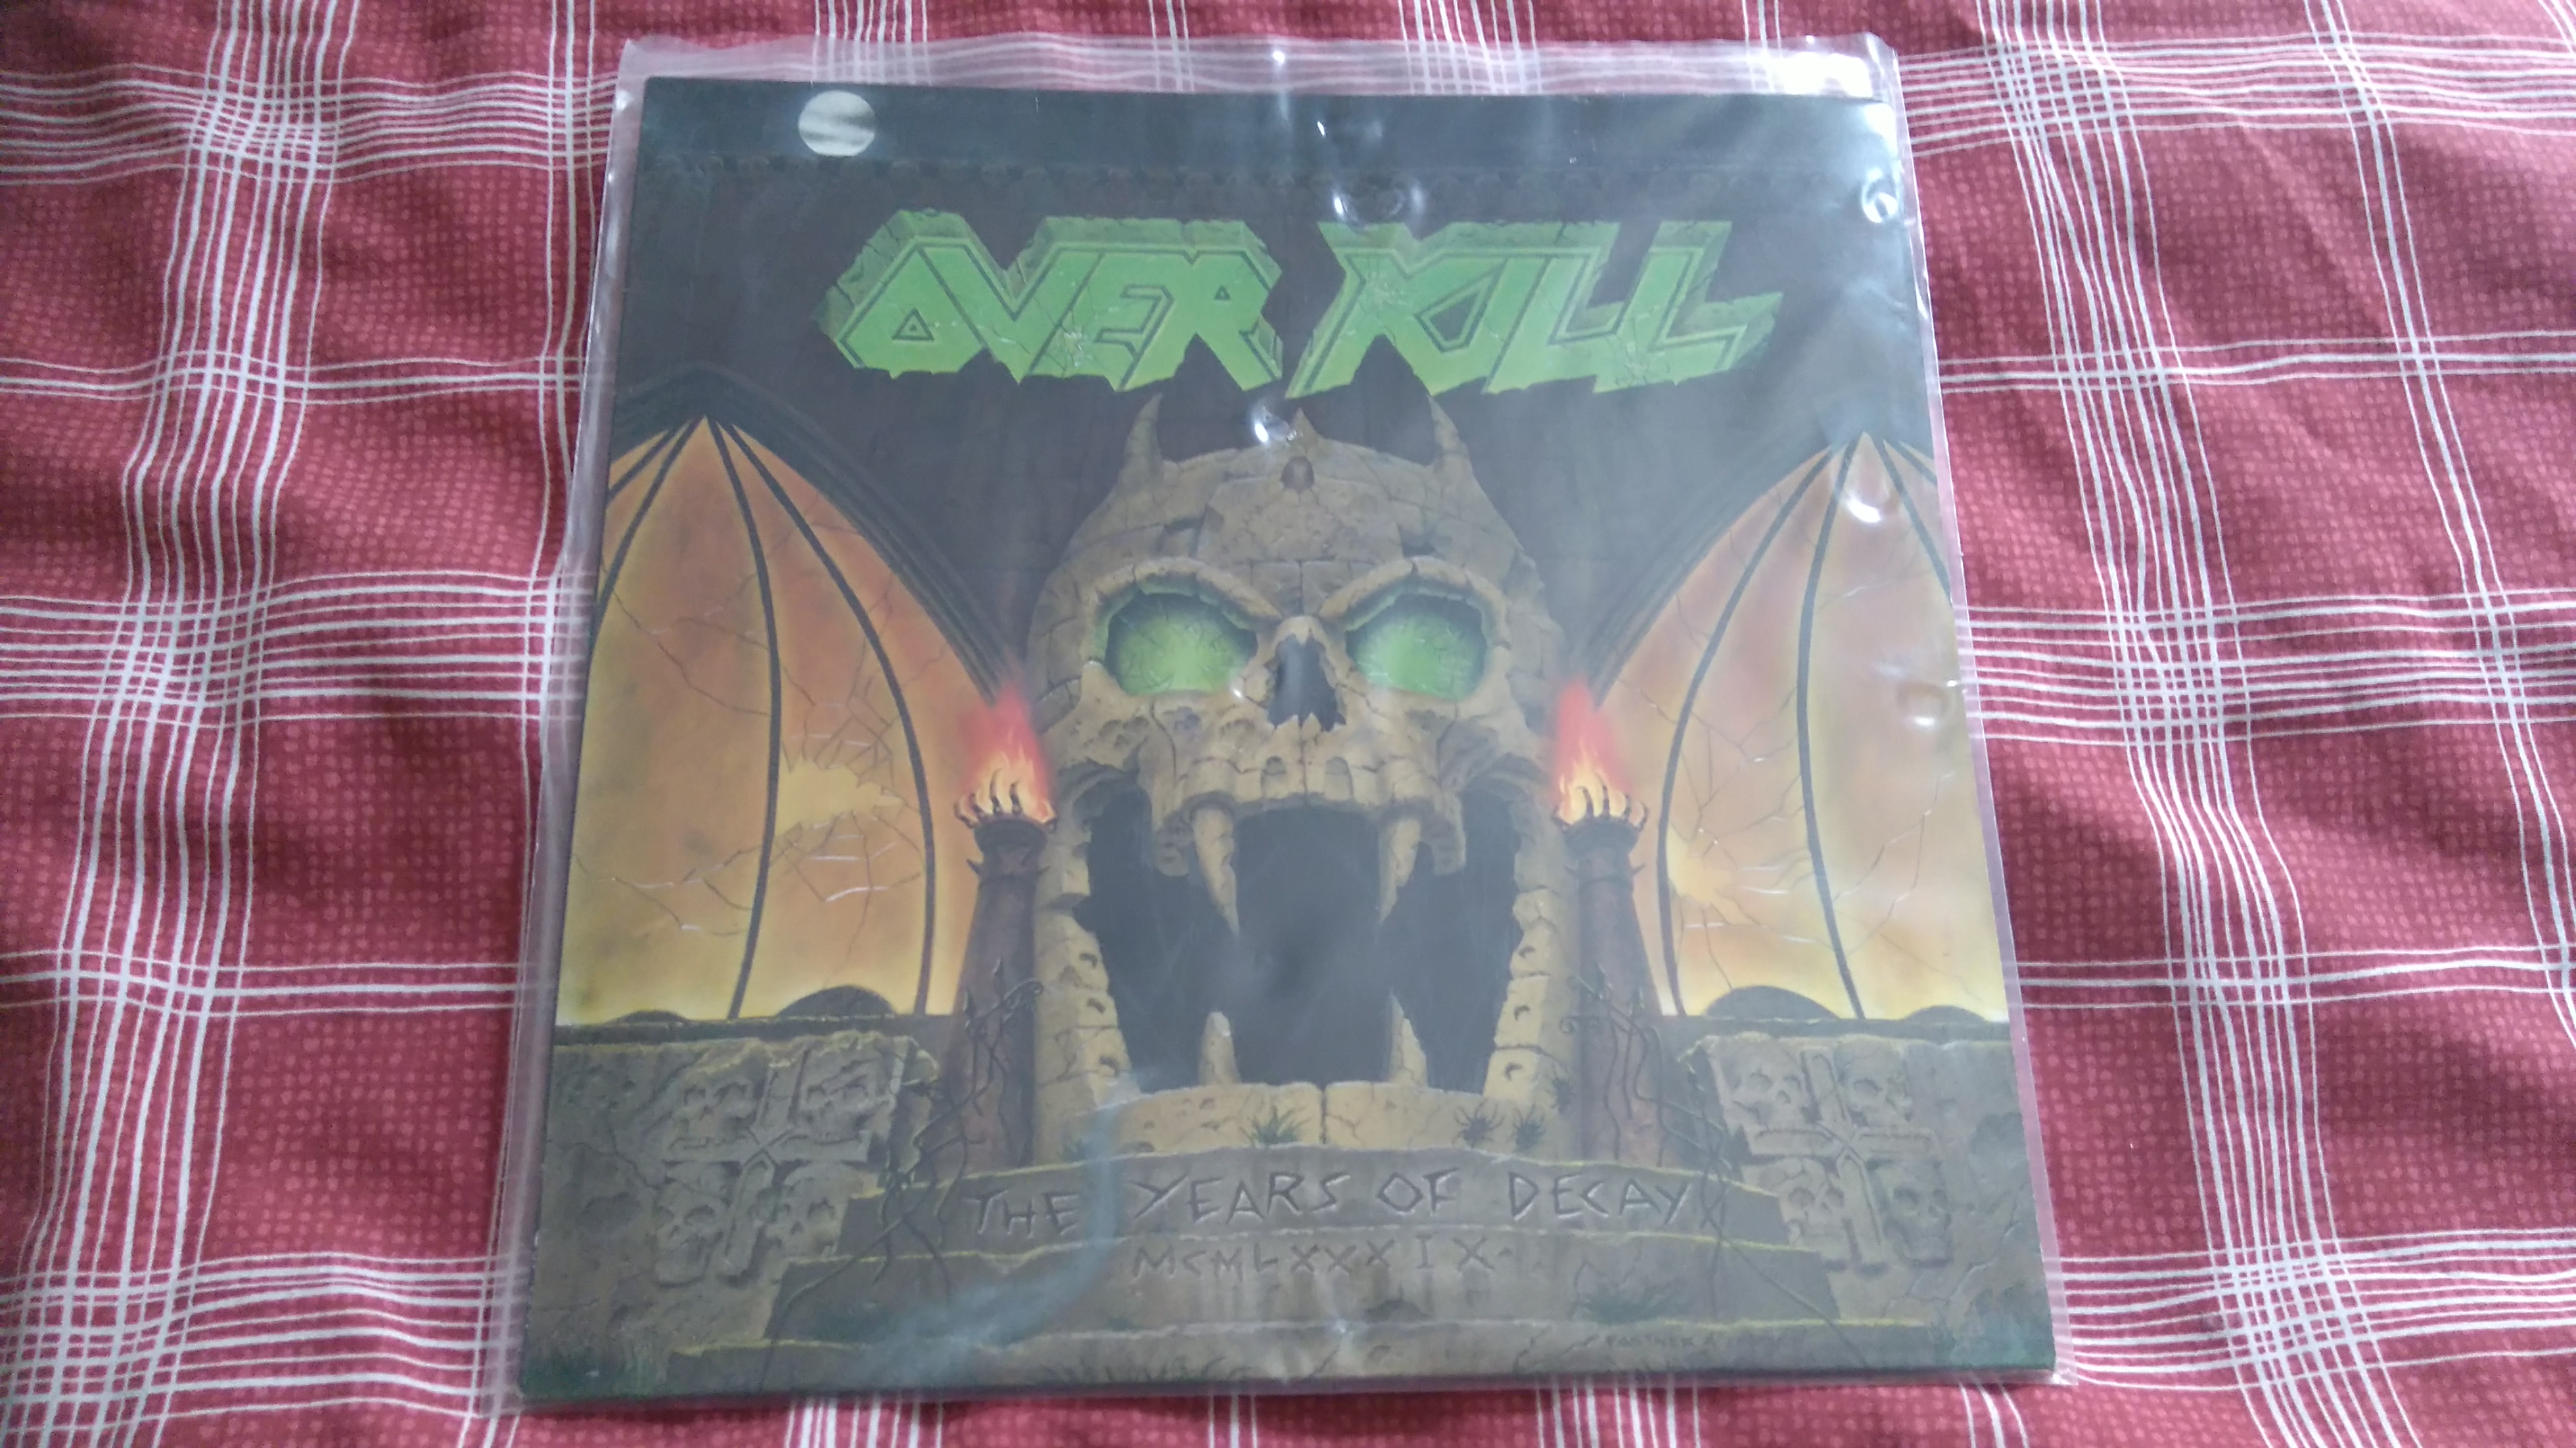 Overkill Vinyl.JPG